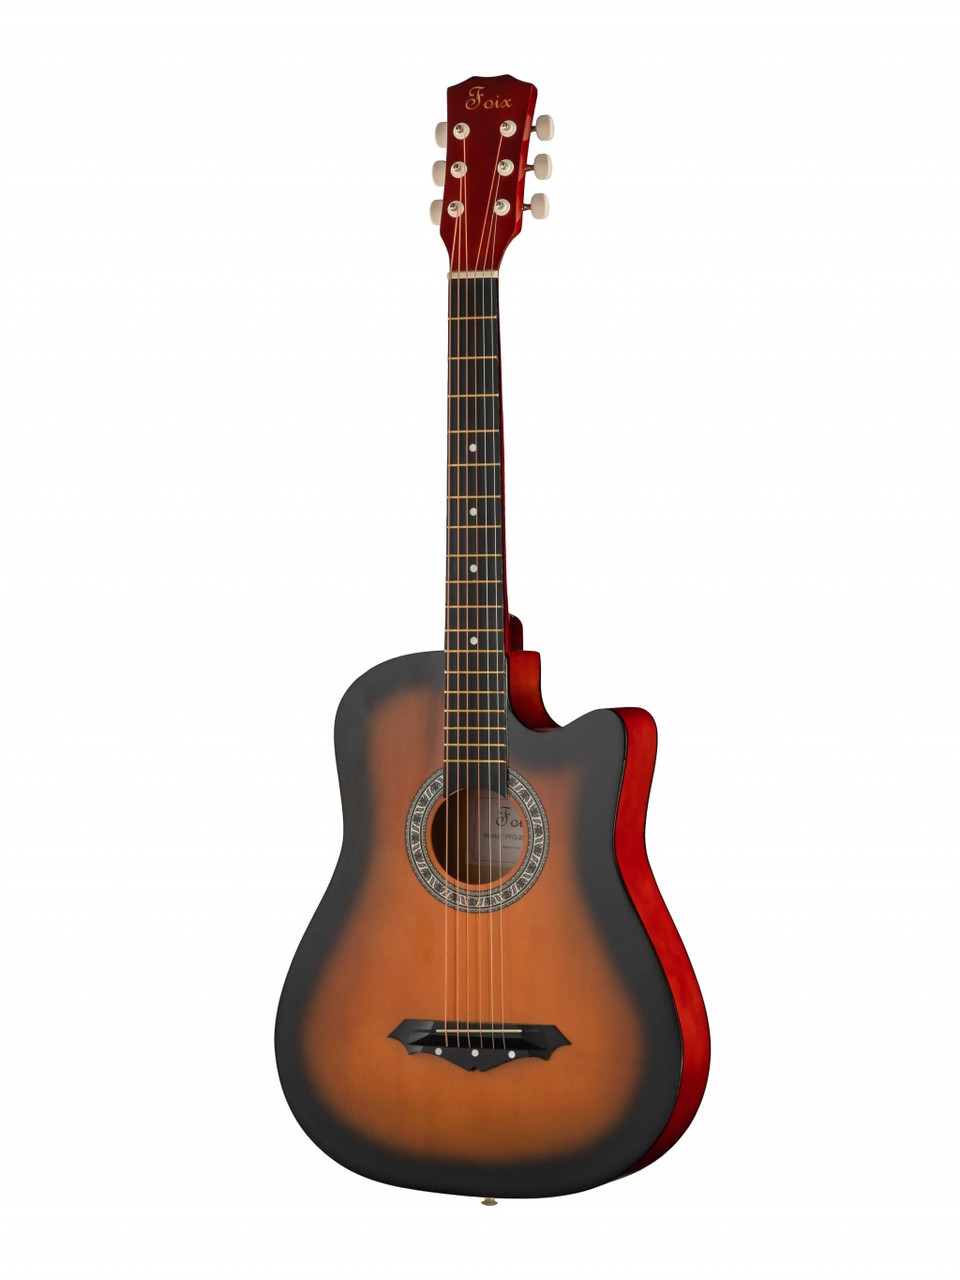 Акустическая гитара, санберст, Foix FFG-2038C-SB